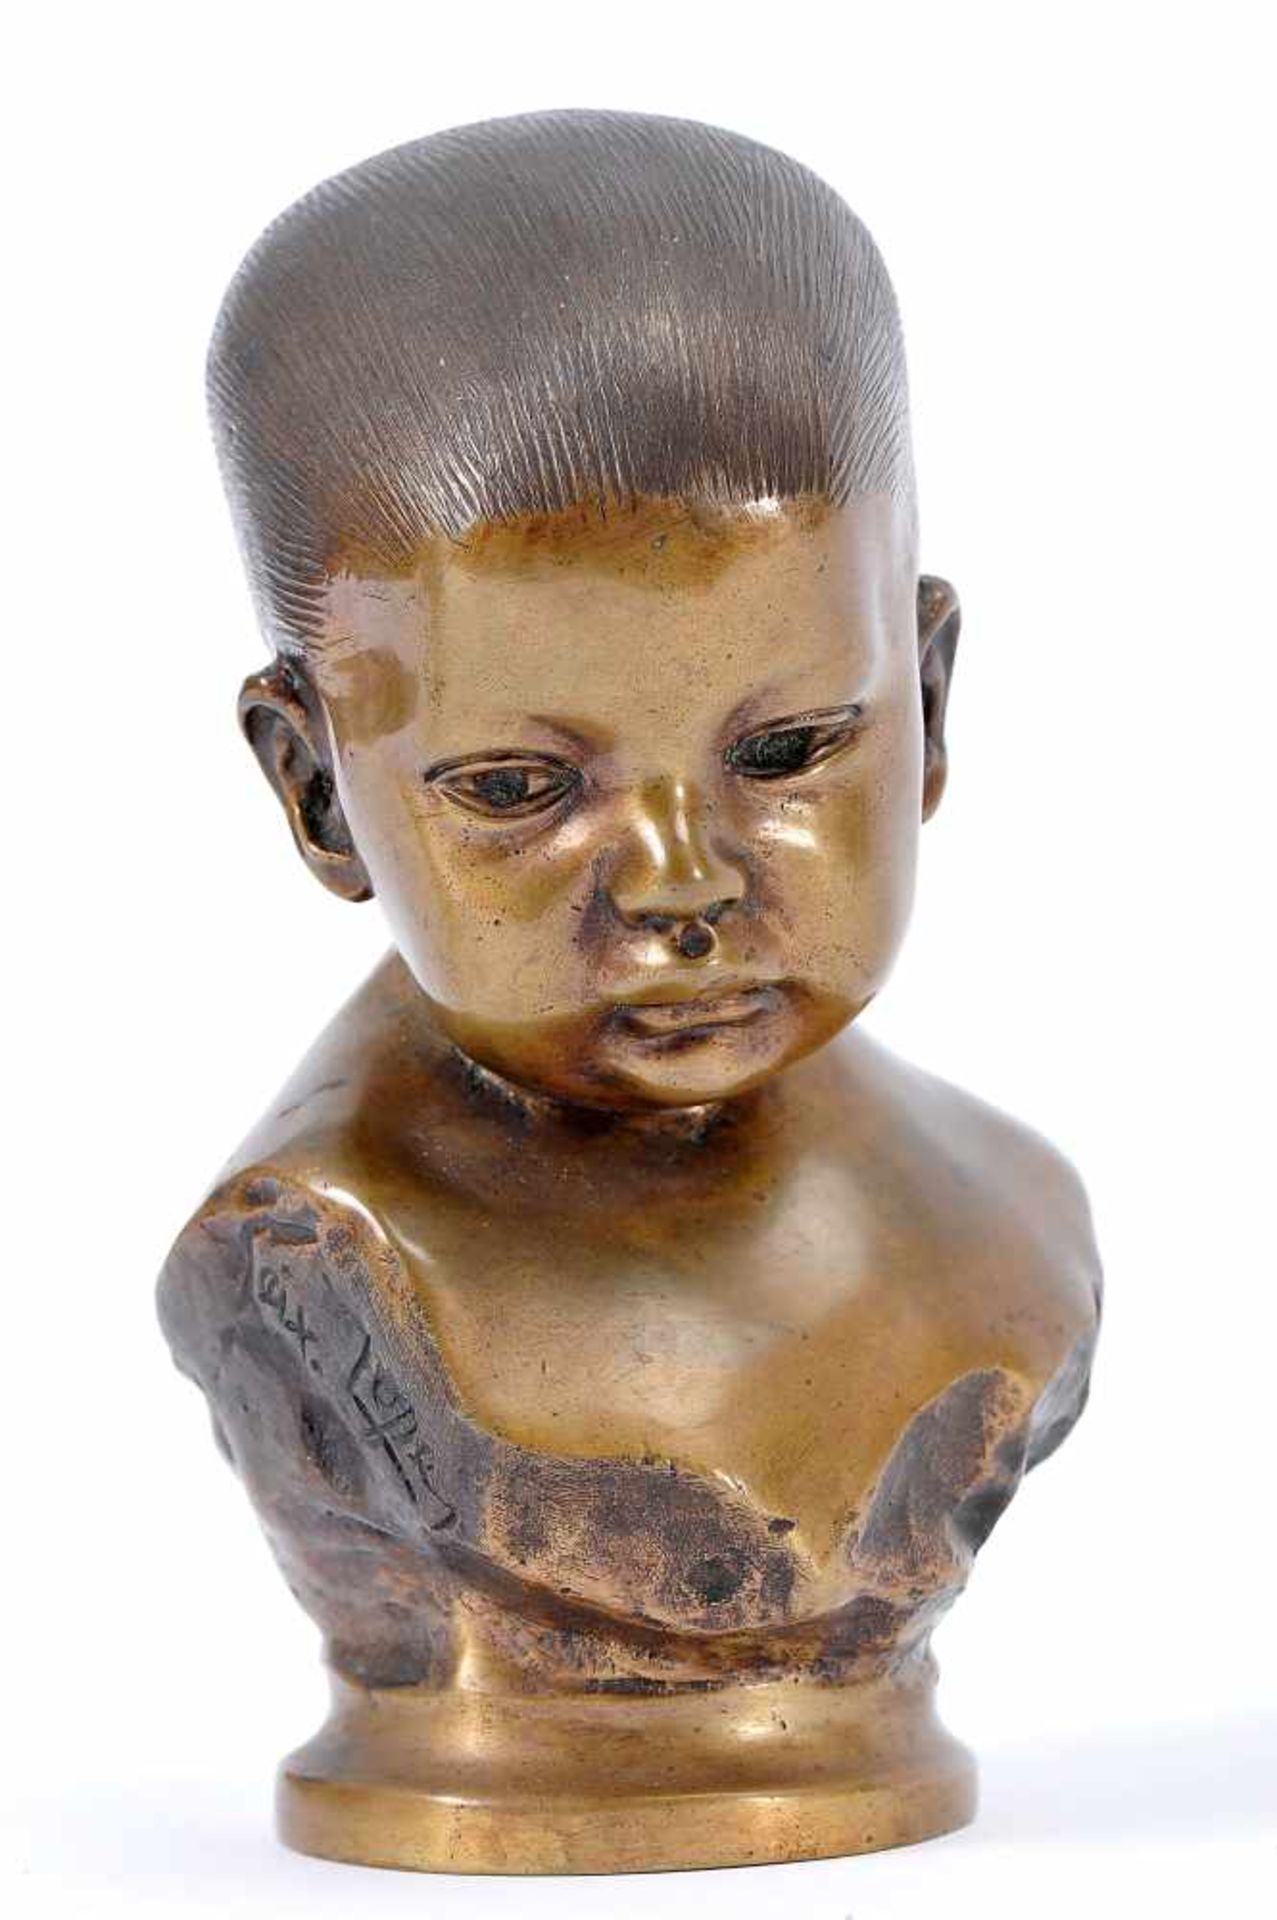 ANTÓNIO TEIXEIRA LOPES - 1866-1942, Mário, bronze sculpture, signed, Dim. - 15,5 cm